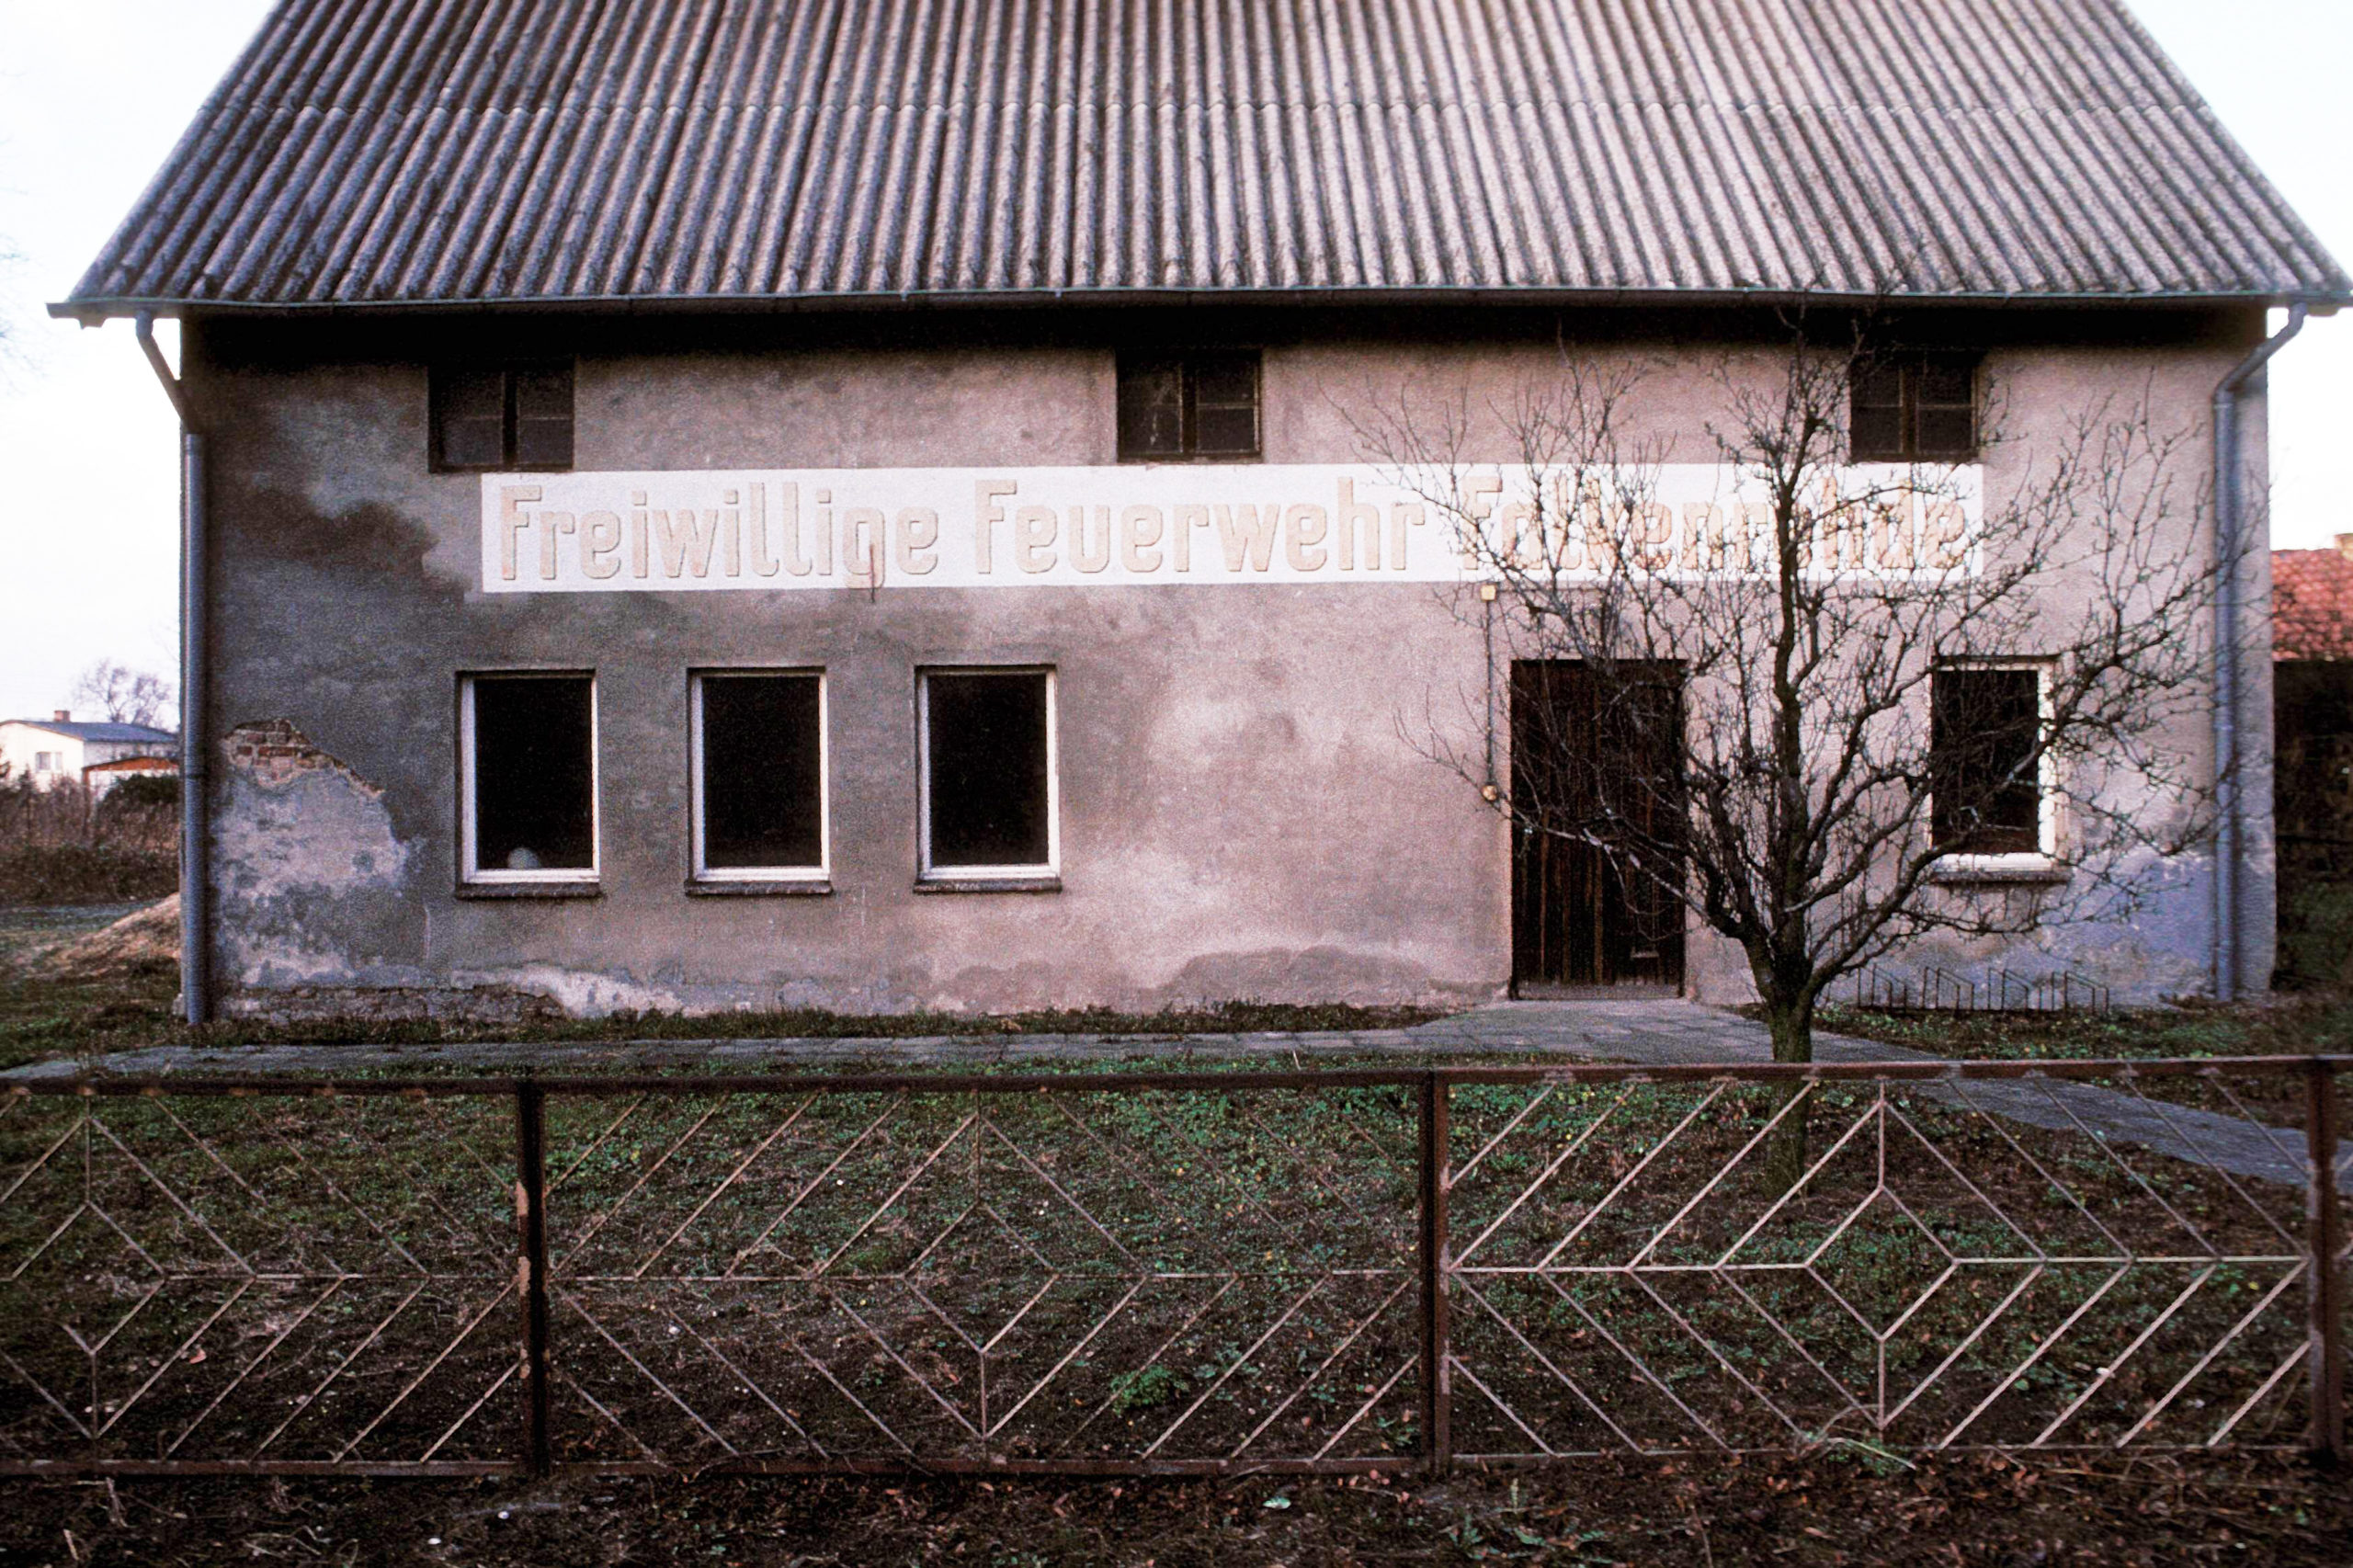 Verlasses Gebäude der Freiwilligen Feuerwehr Falkenrehd, 1990. Foto: Imago/Dieter Matthes